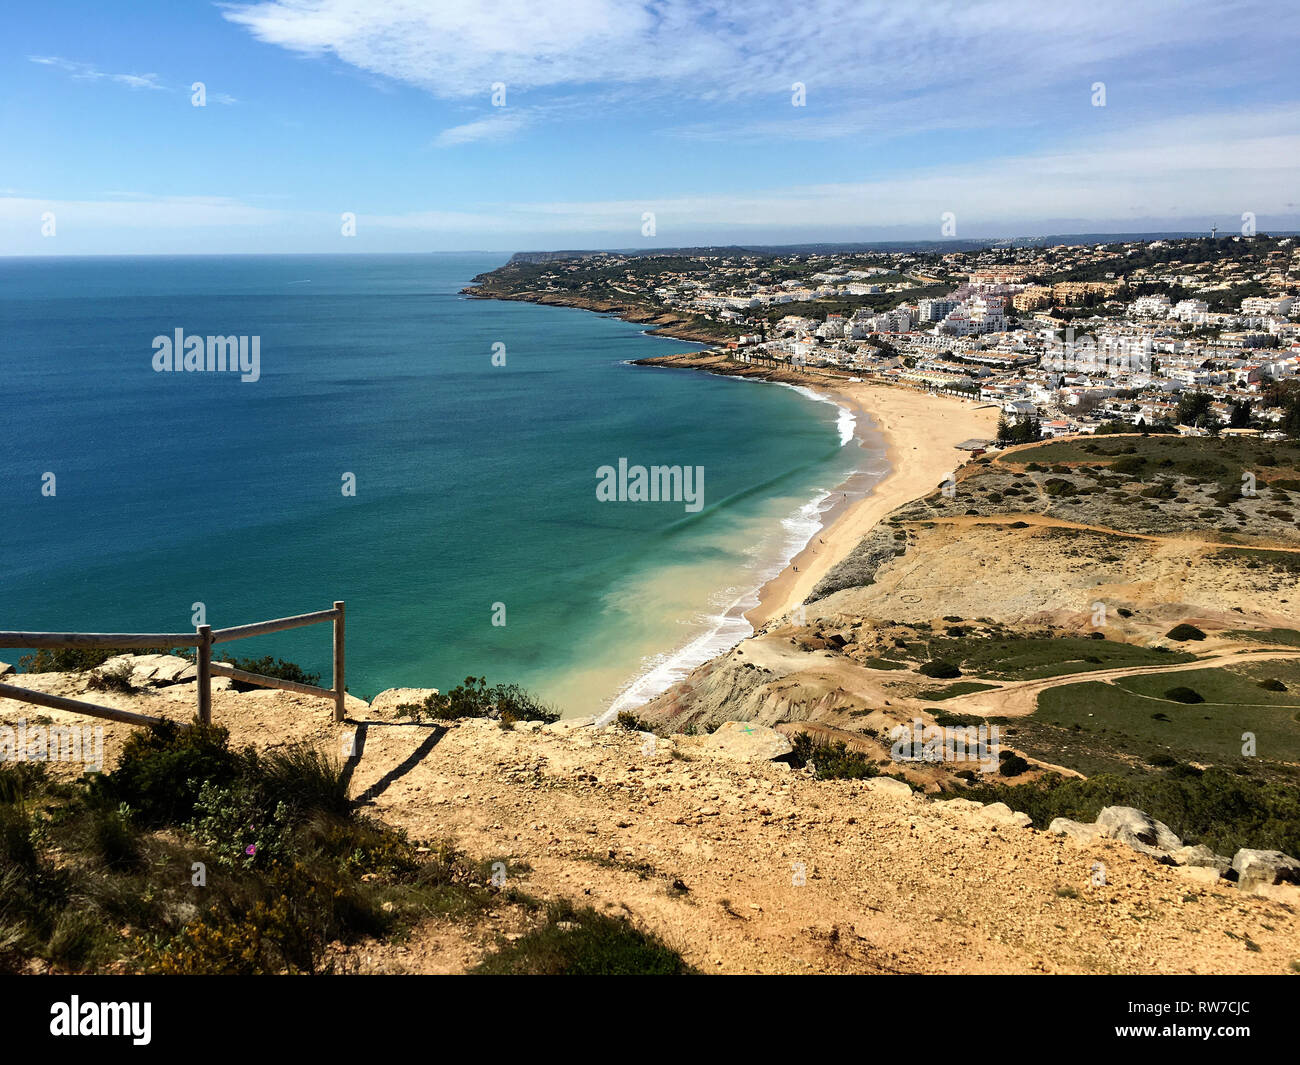 Ruhe enthüllt: Eine abgeschiedene Bank mit Blick auf die riesige portugiesische Meereslandschaft in Algarve's Lagos, wo Natur und Ozean am Horizont verschmelzen Stockfoto